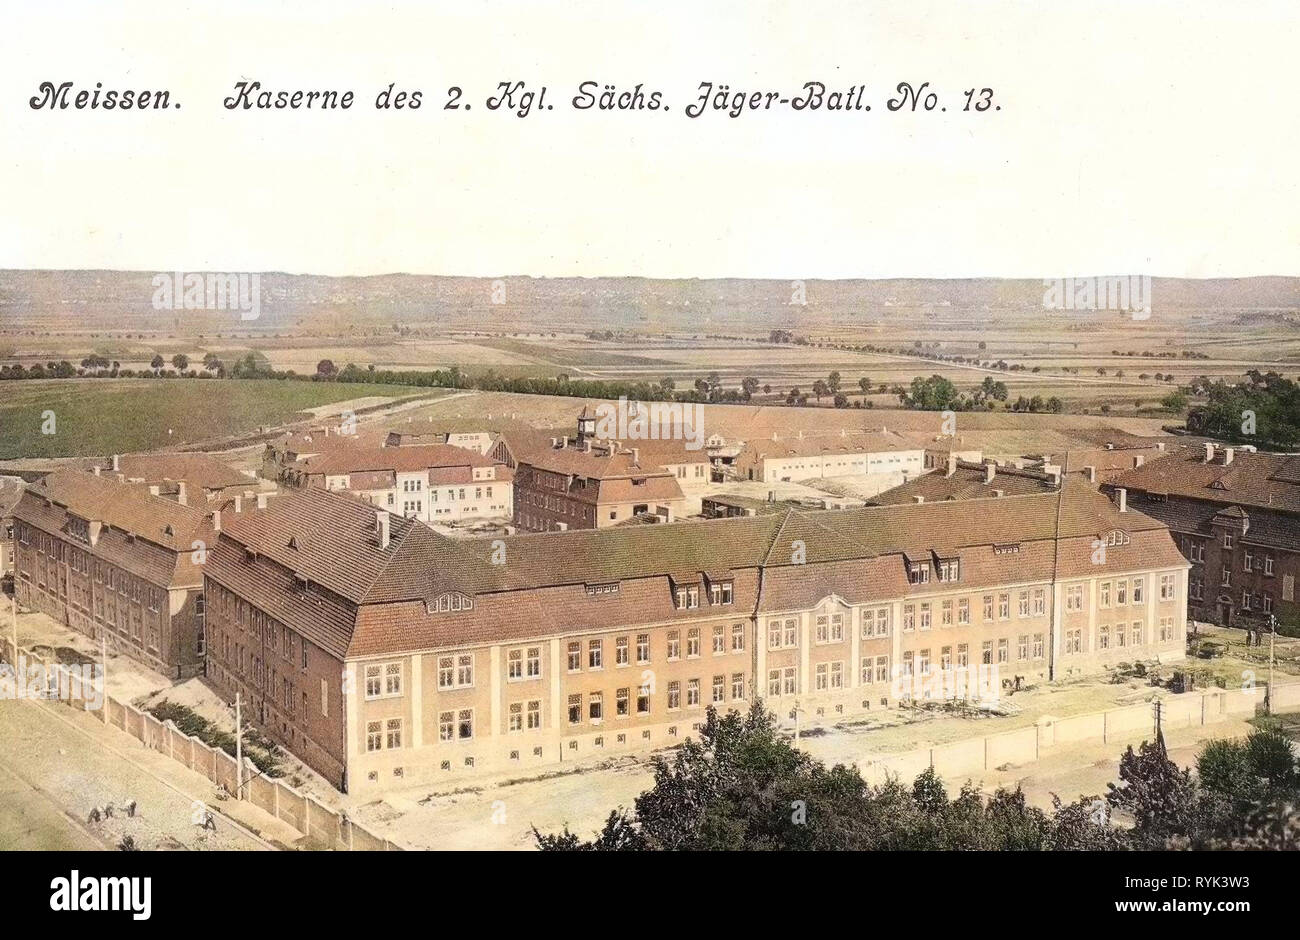 Military facilities of Germany, 2. Königlich Sächsisches Jäger-Bataillon Nr. 13, Barracks in Saxony, Buildings in Meißen, 1914, Meißen, Kaserne des 2. Königlich Sächsischen Jäger, Bataillon Nr. 13 Stock Photo